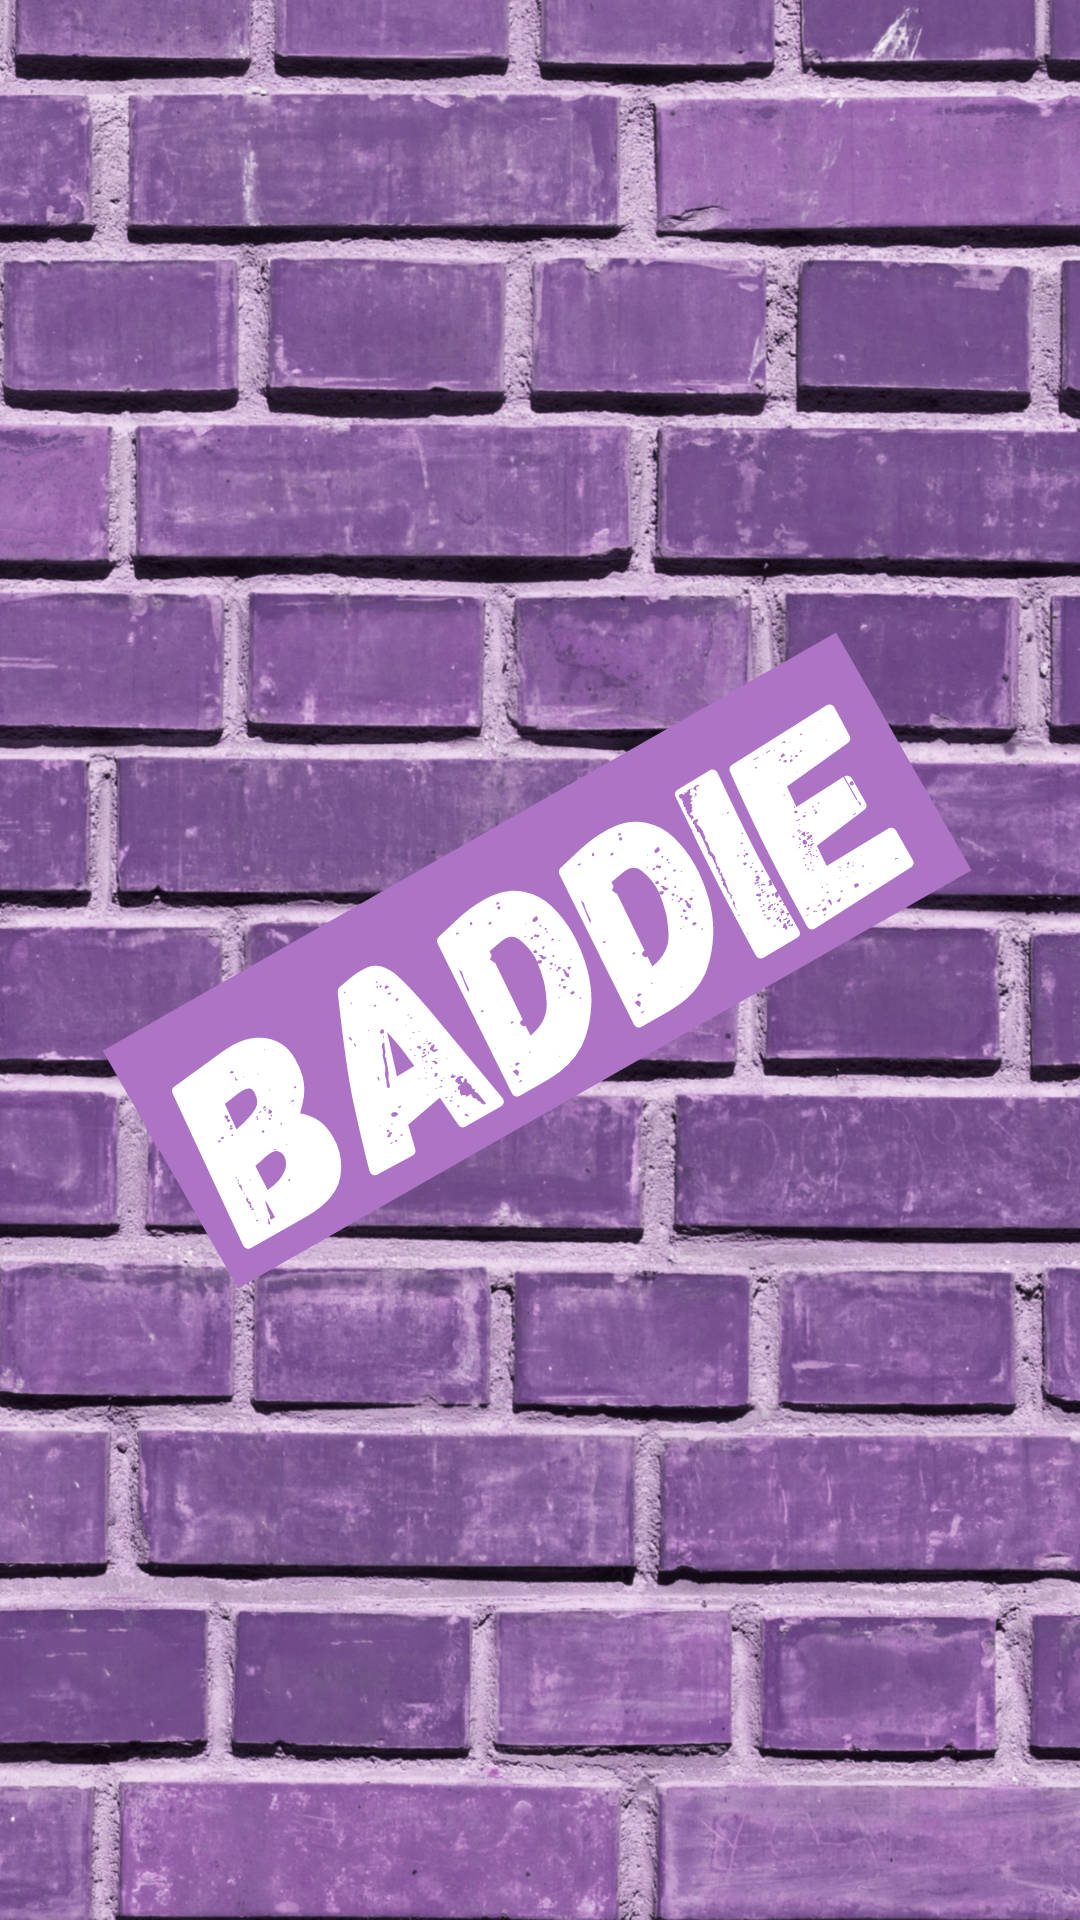 The Purple Baddie